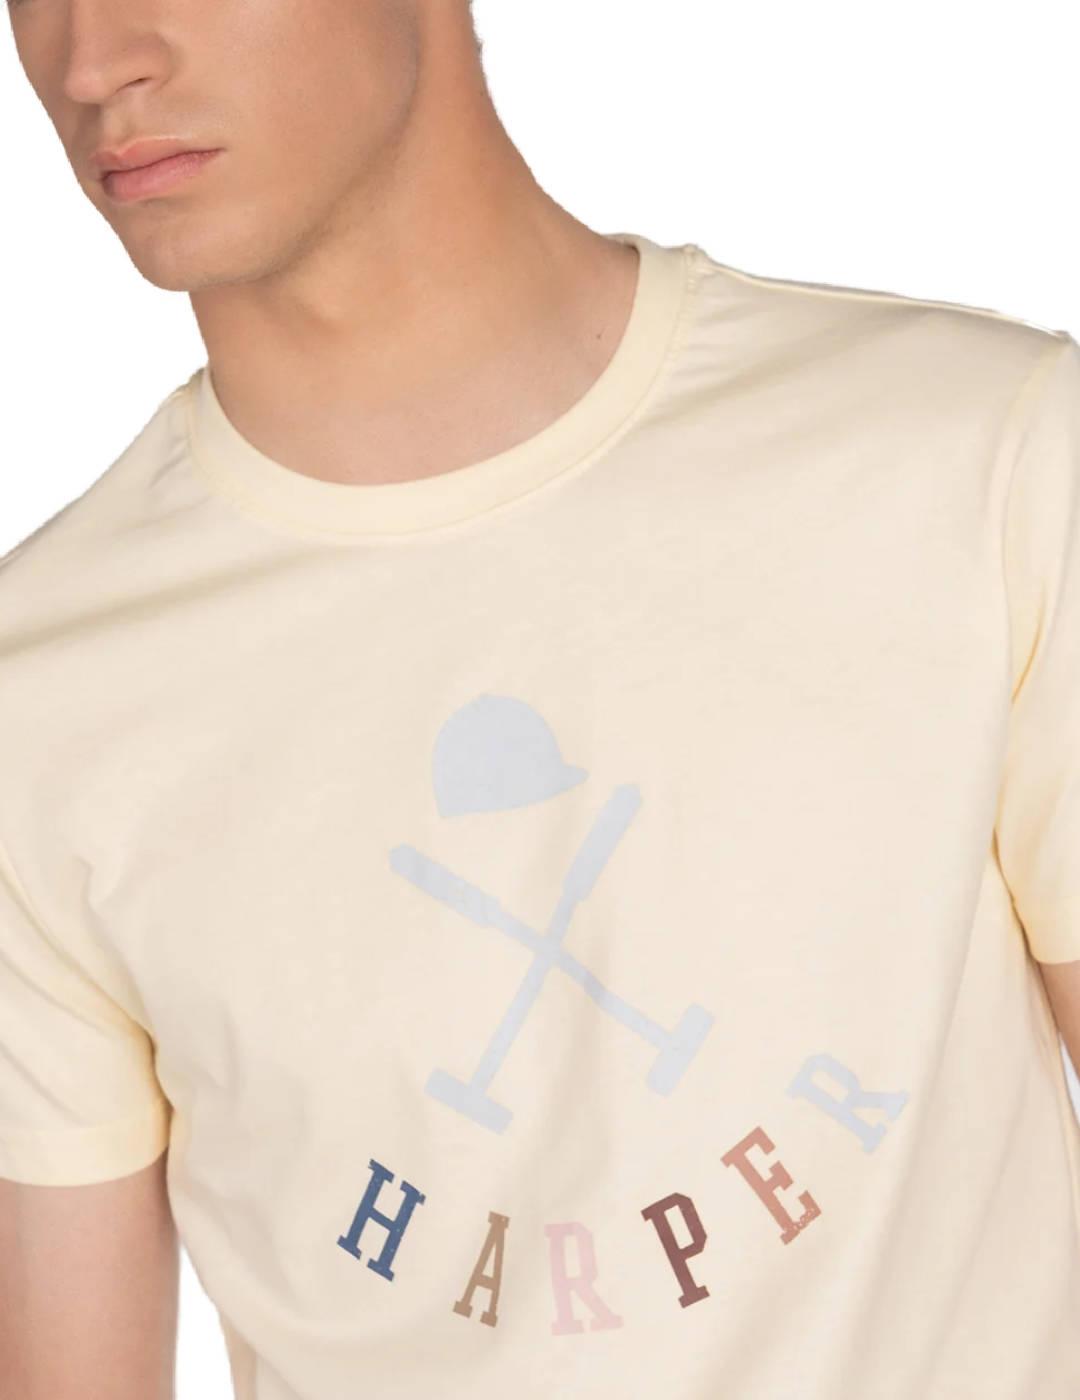 Camiseta Harper Preppy amarilla manga corta para hombre